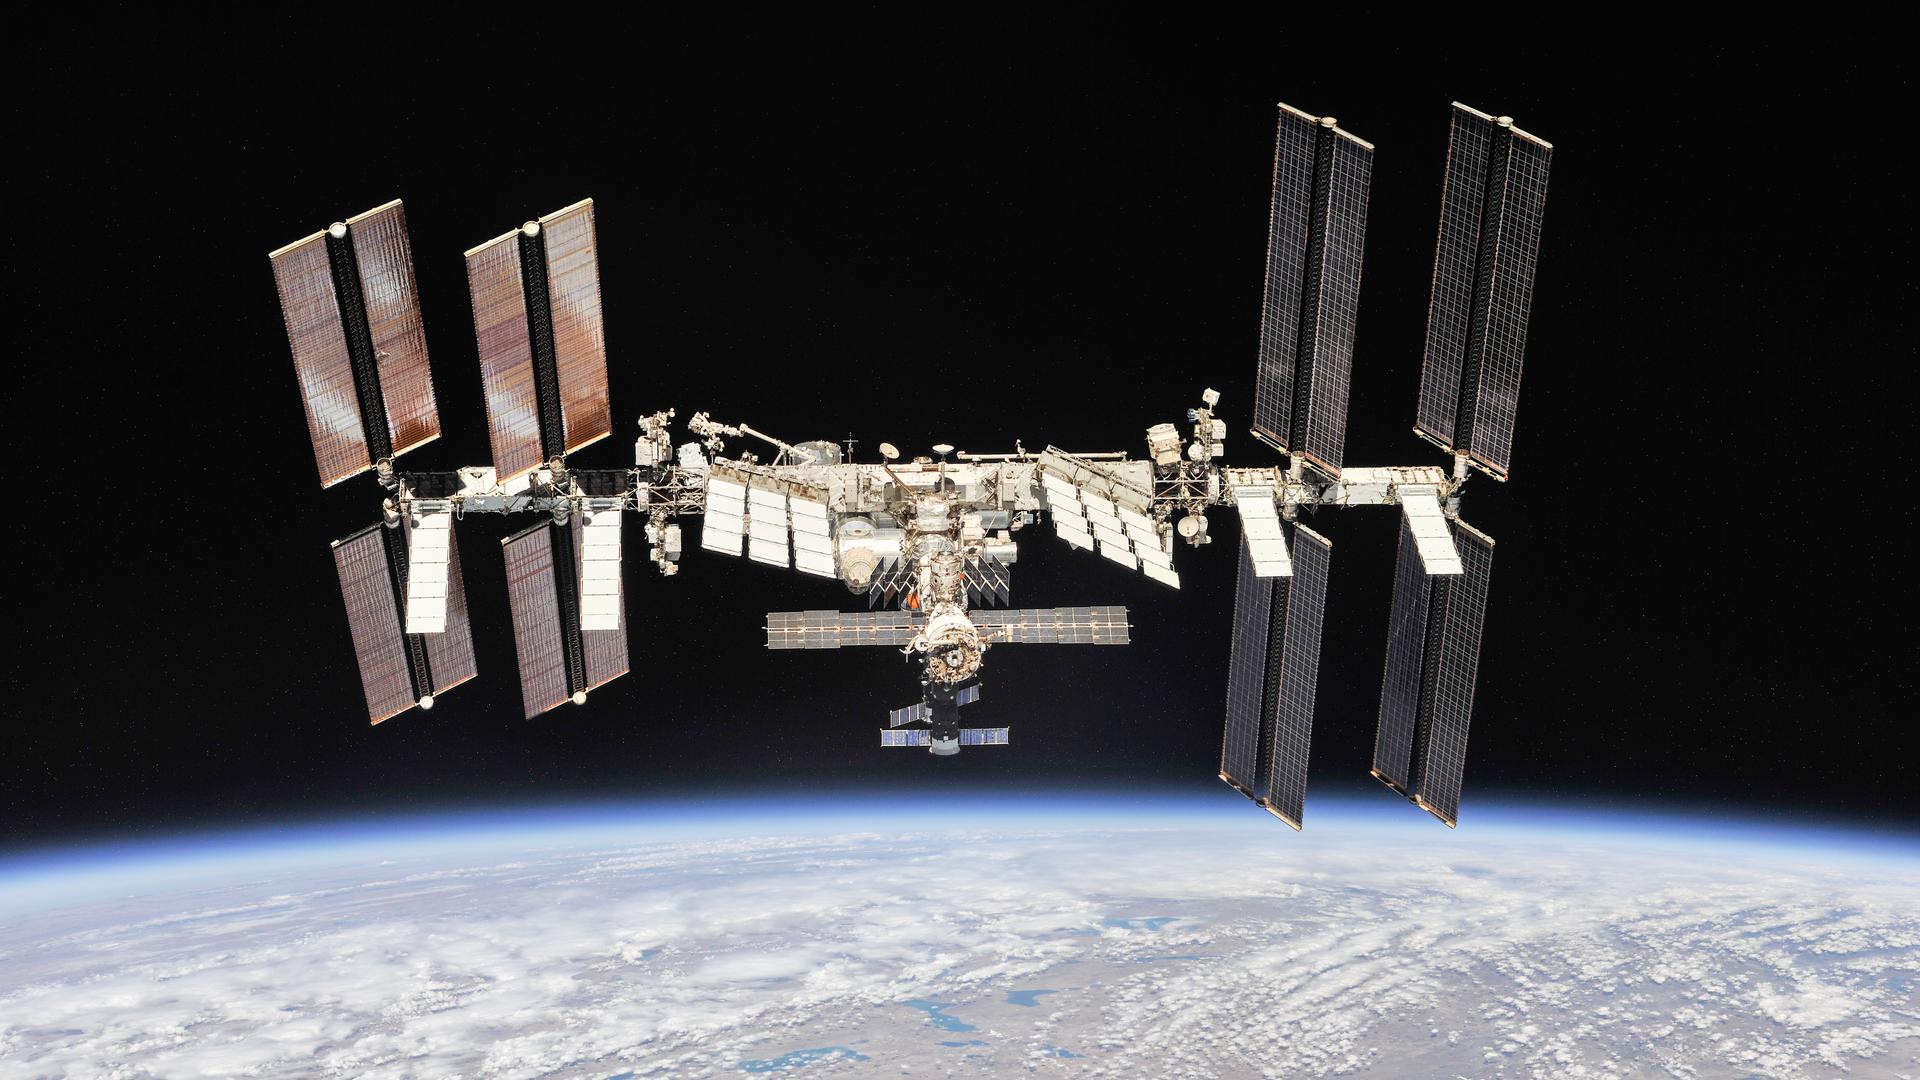 Ungewisse Zukunft: Die ISS ist das teuerste und komplizierteste Bauwerk in der Geschichte der Menschheit. Russlands Entscheidung, die Internationale Raumstation nach 2024 zu verlassen, bringt das gemeinsame Forschungsprojekt im All in große Nöte. 